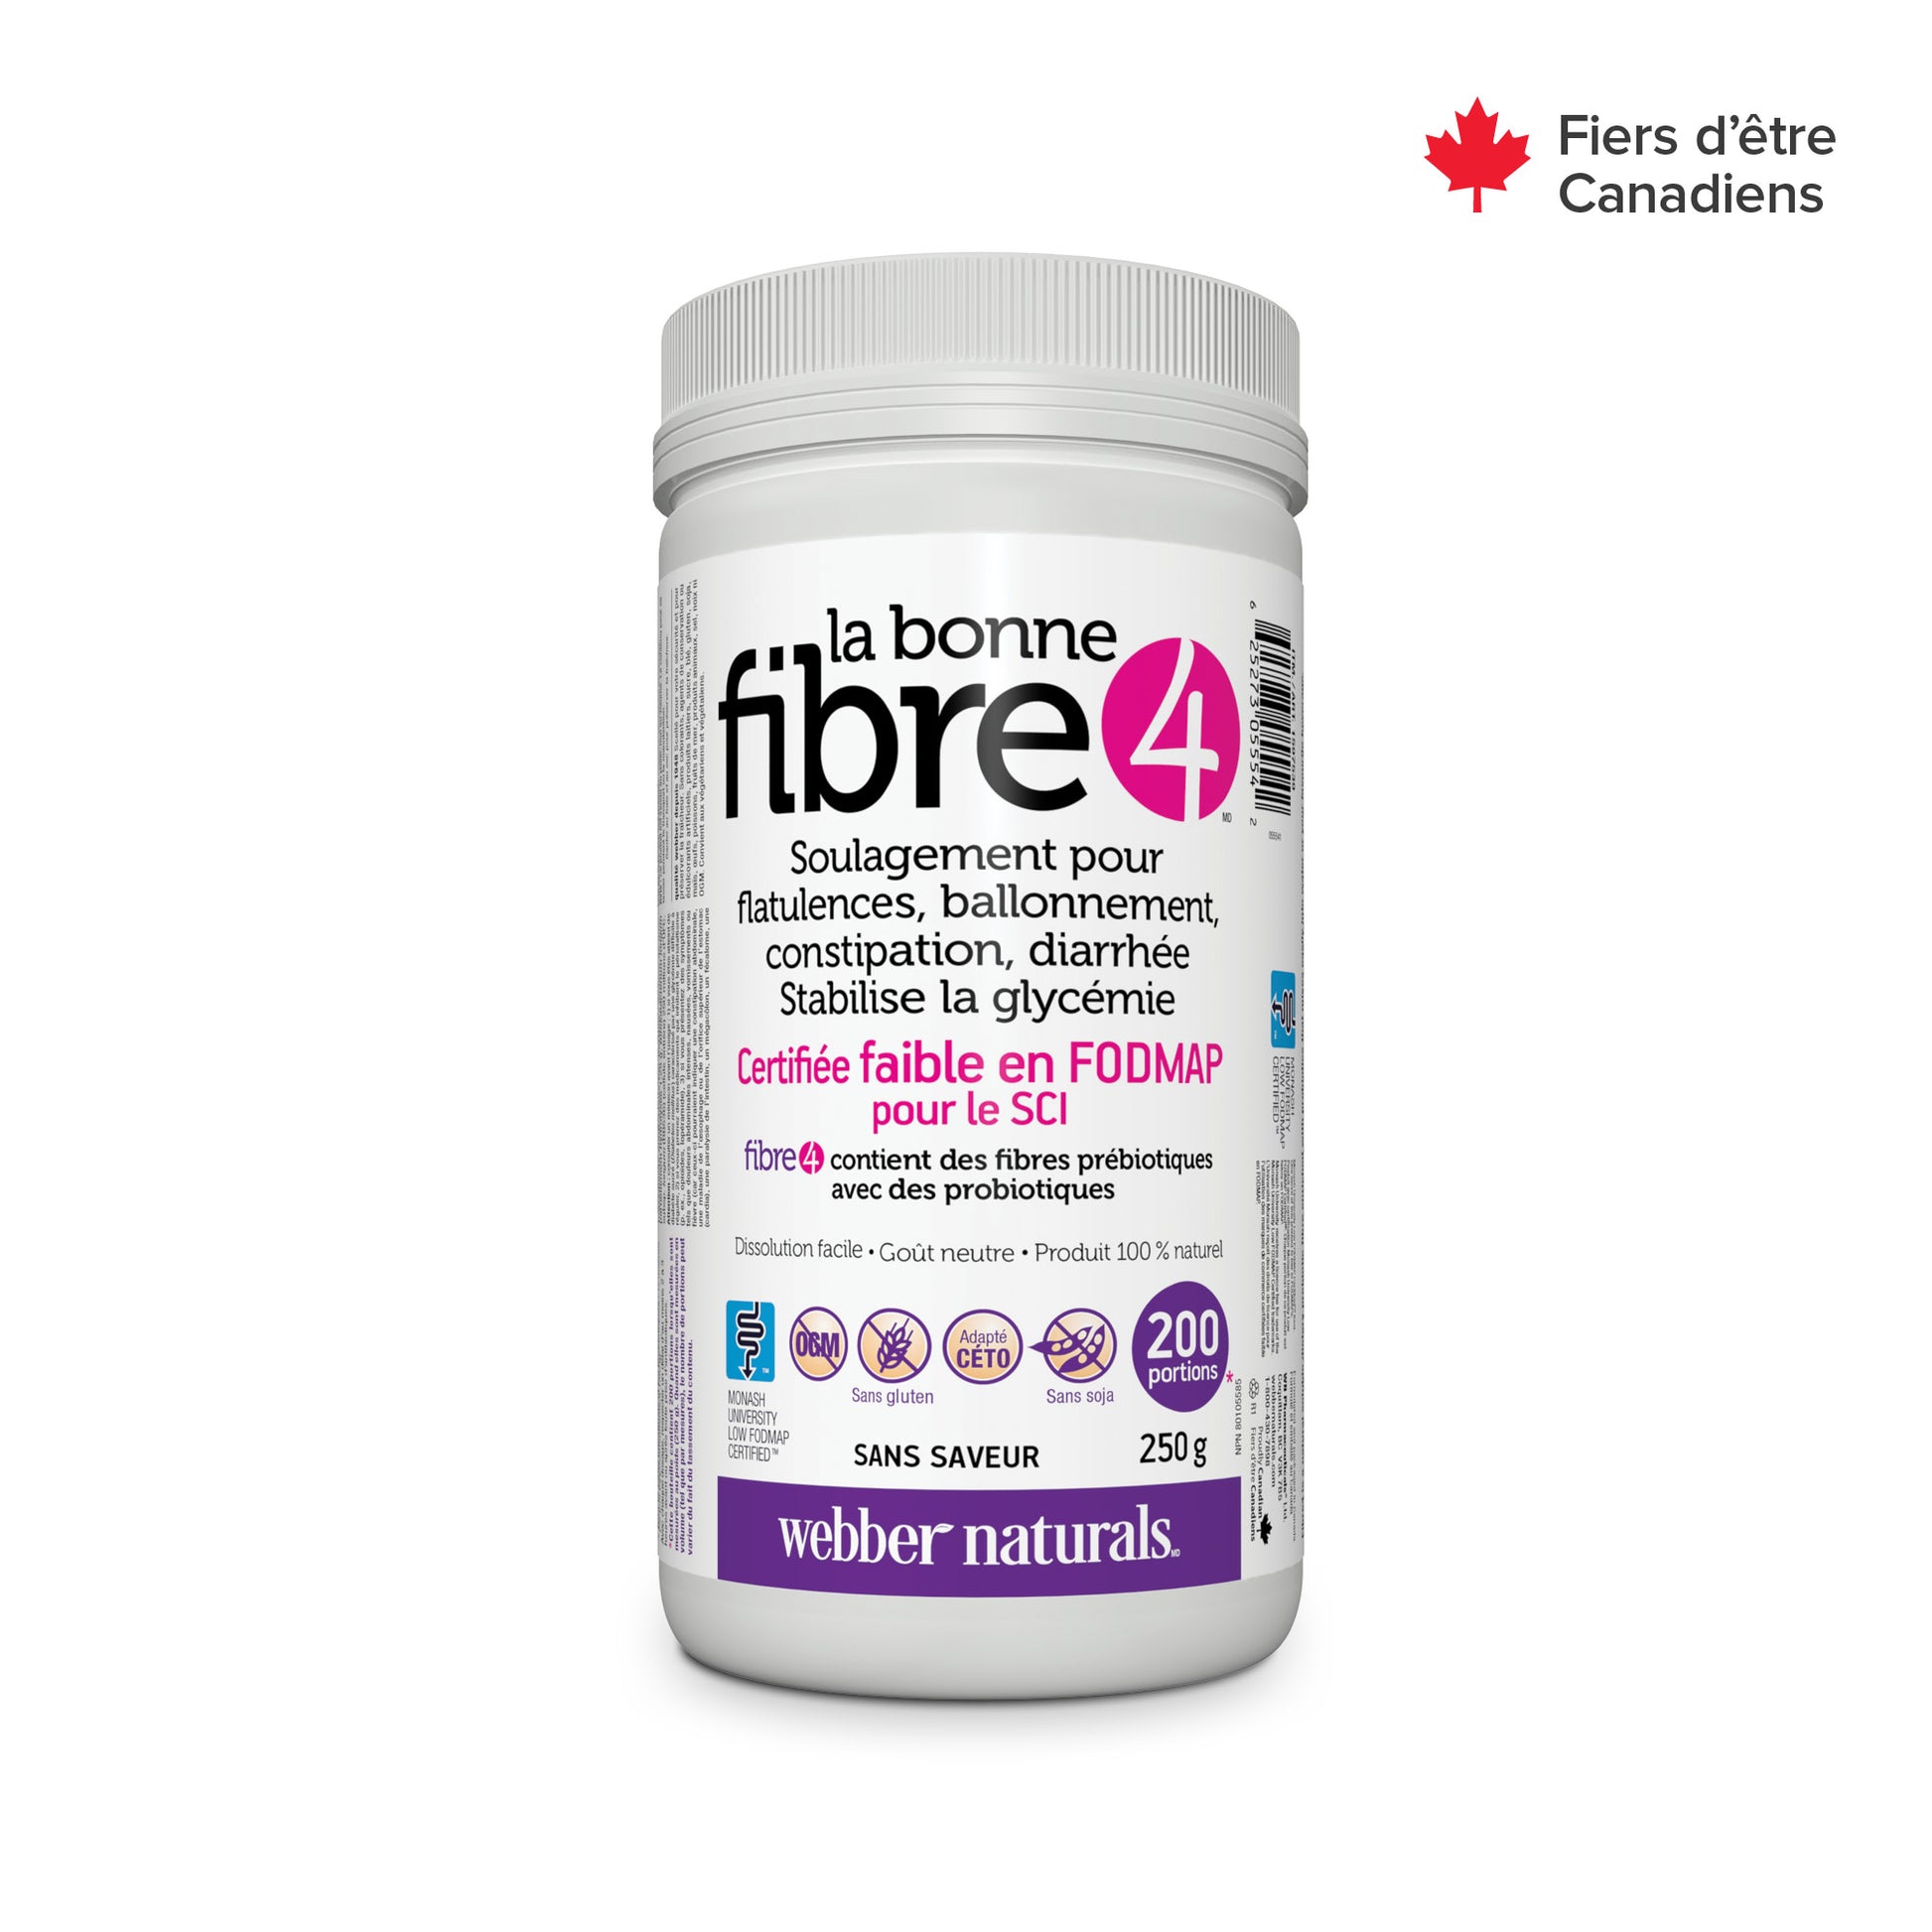 La bonne fibre4 for Webber Naturals|v|hi-res|WN5554